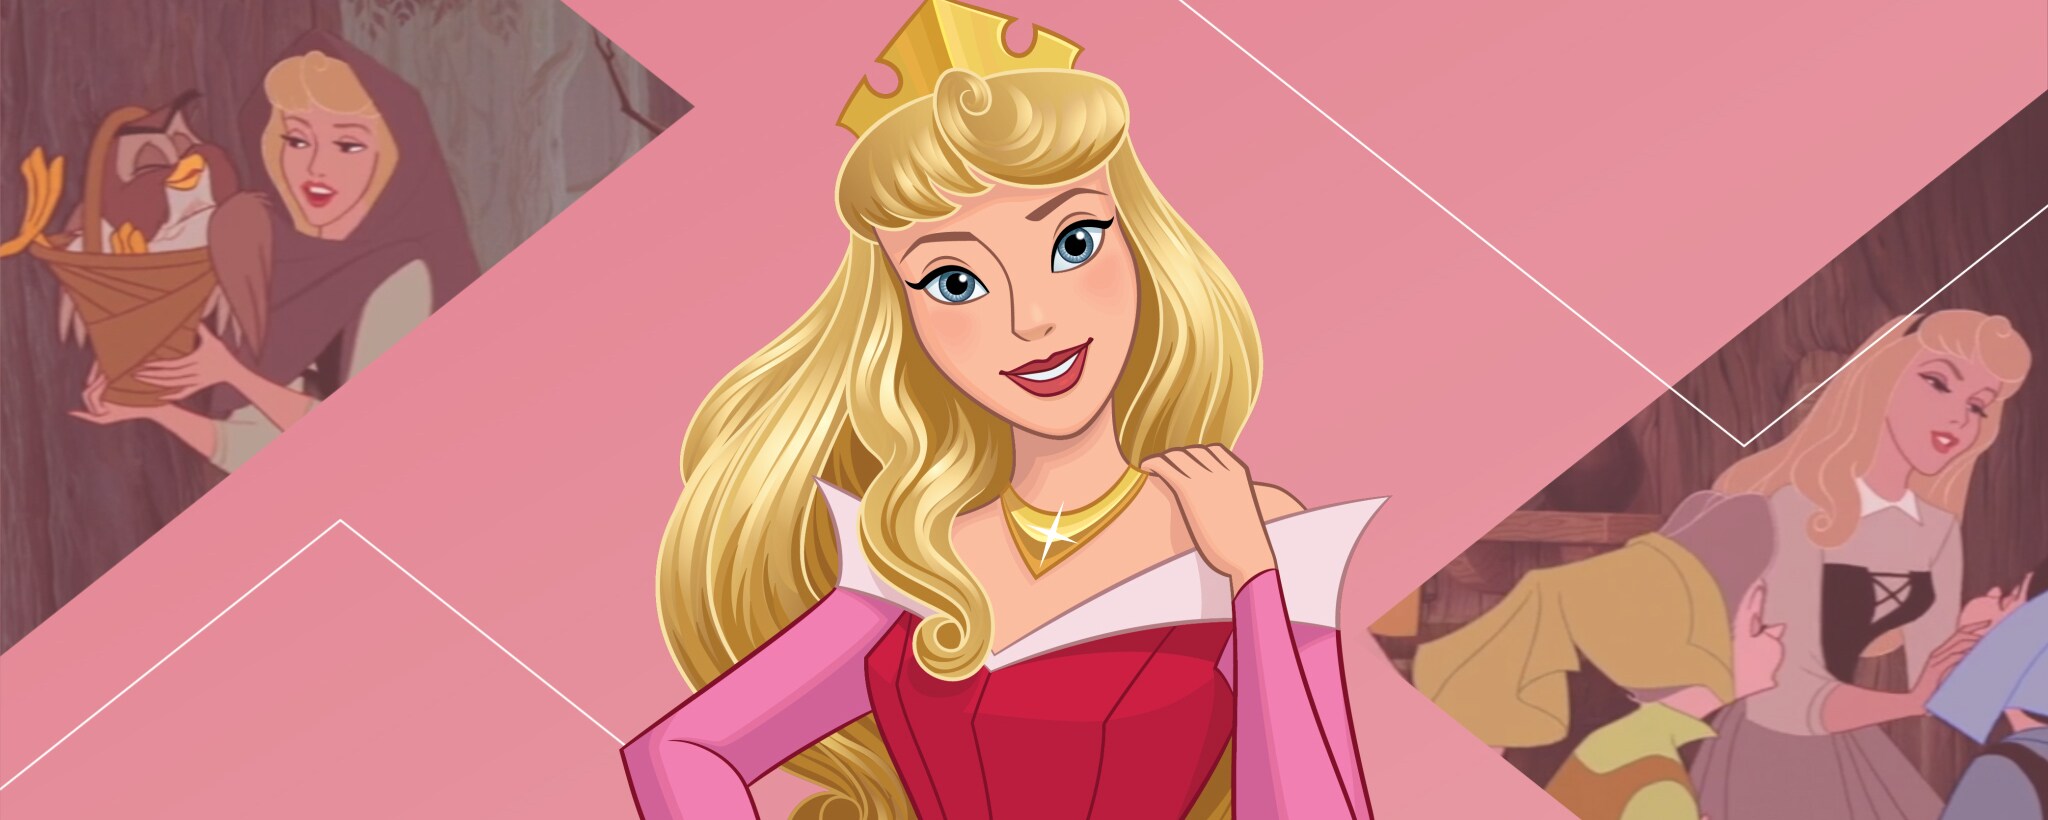 Princesa Aurora Da Bela Adormecida - Lojas De Disney Foto